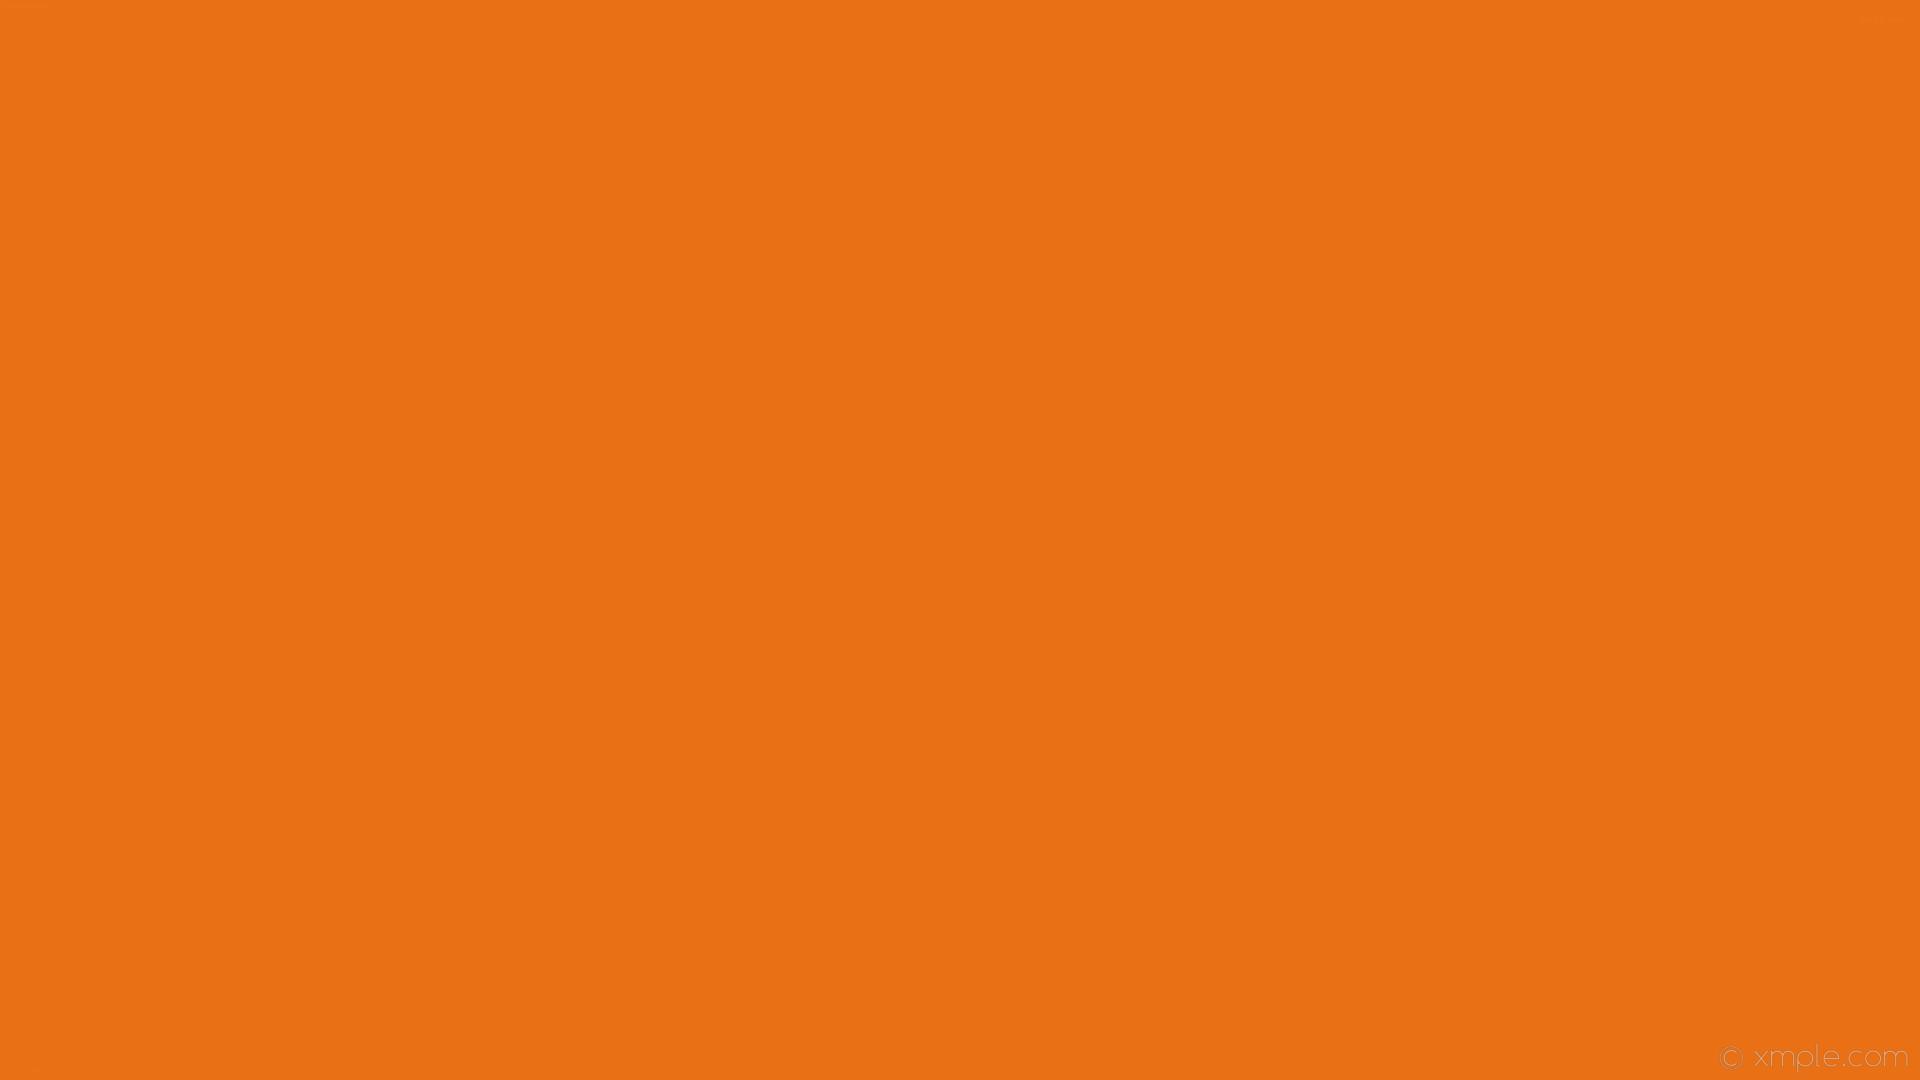 Những hình nền trơn màu cam sẽ tạo ra một không gian thoải mái và ấm áp trong phòng của bạn. Hãy đến với hình ảnh liên quan để khám phá những ý tưởng trang trí phòng mới lạ với hình nền màu cam.